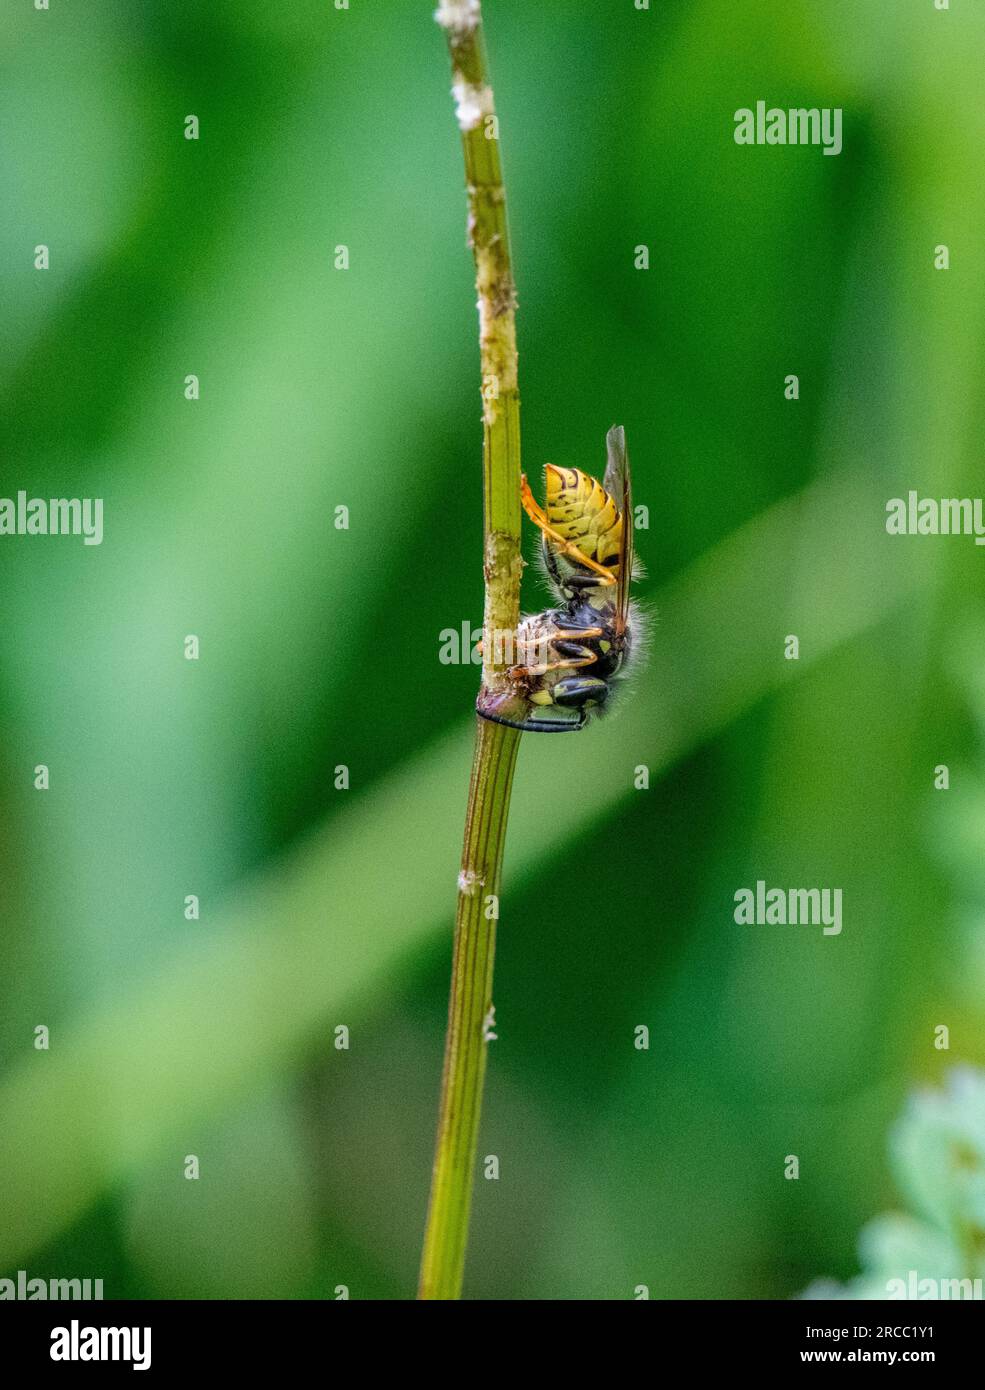 La vespa per lavoratori comuni masticare lo strato esterno di uno stelo vegetale per fornire cibo o materiale da costruzione per il nido. Foto Stock